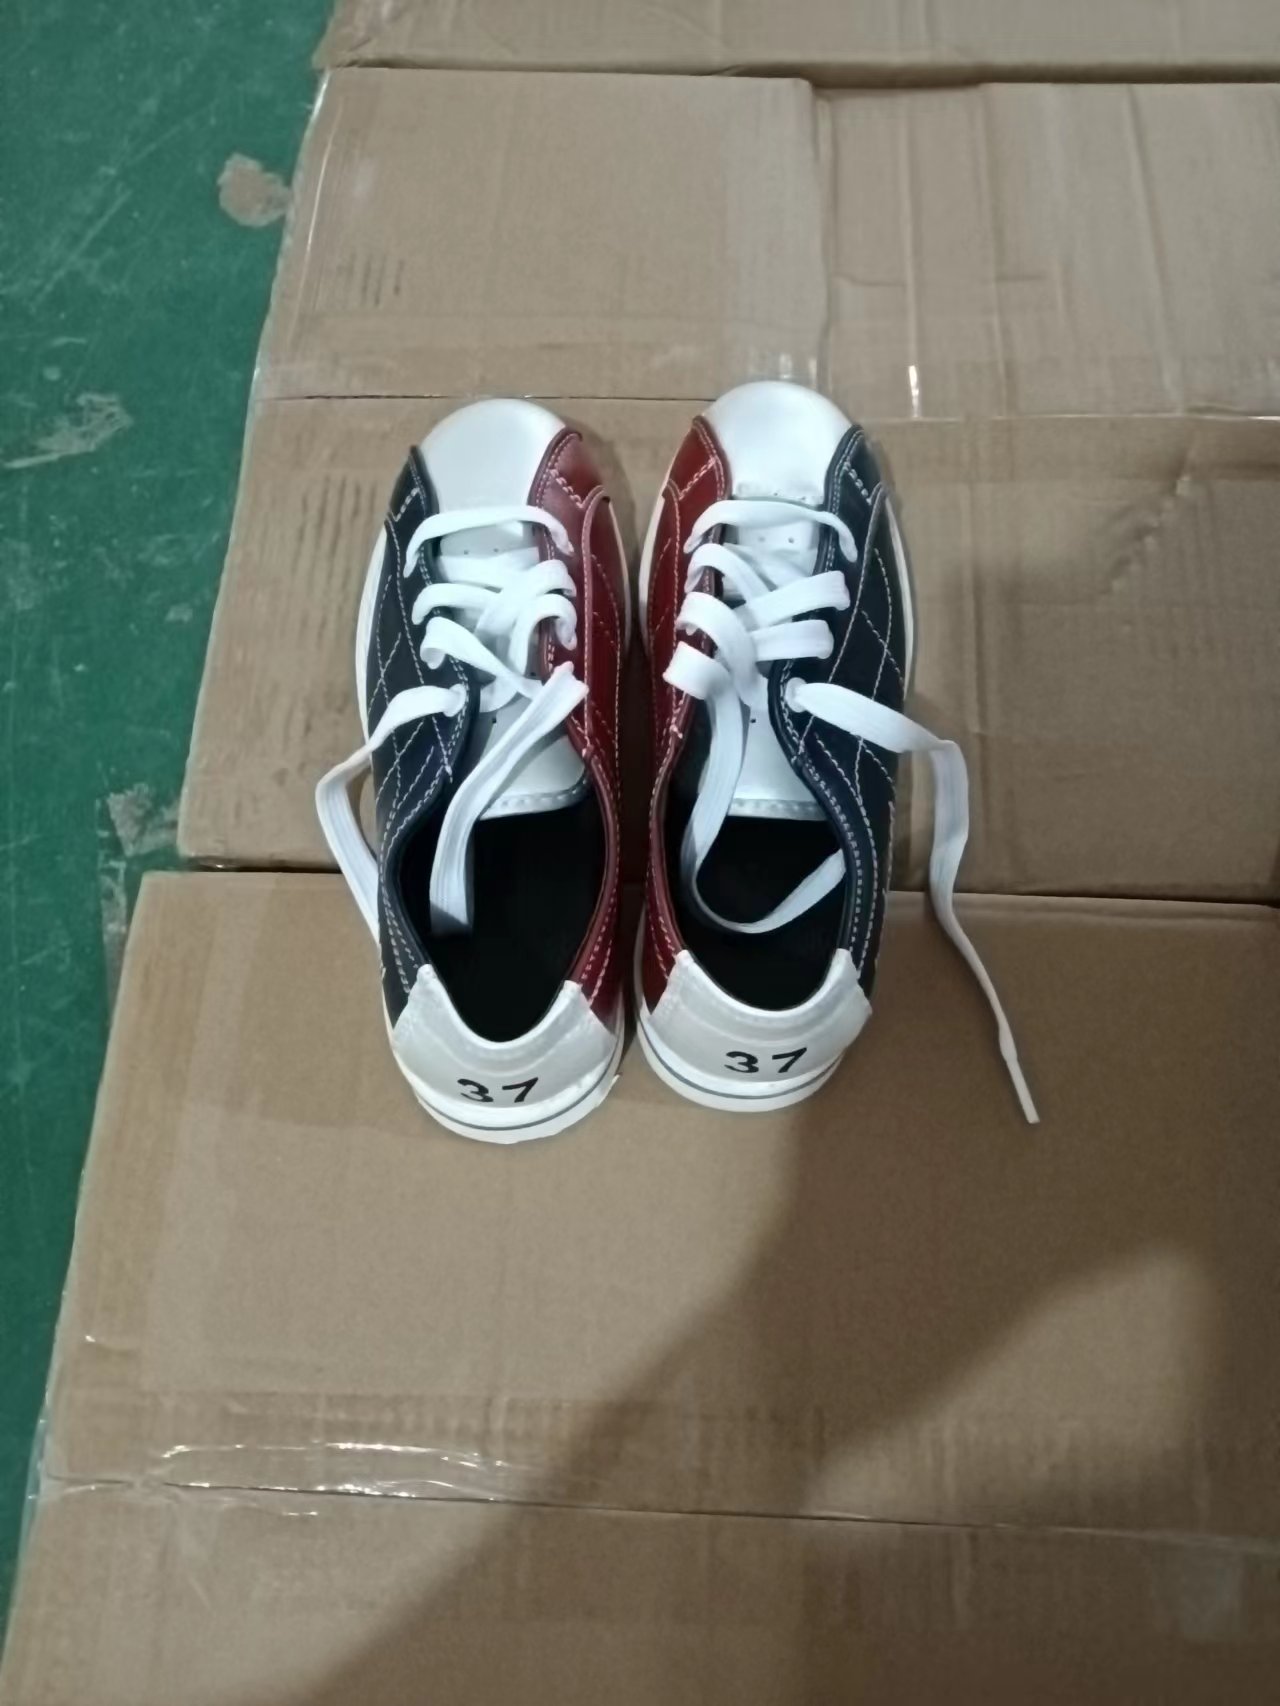 Ботинки для боулинга закуплены в Китае